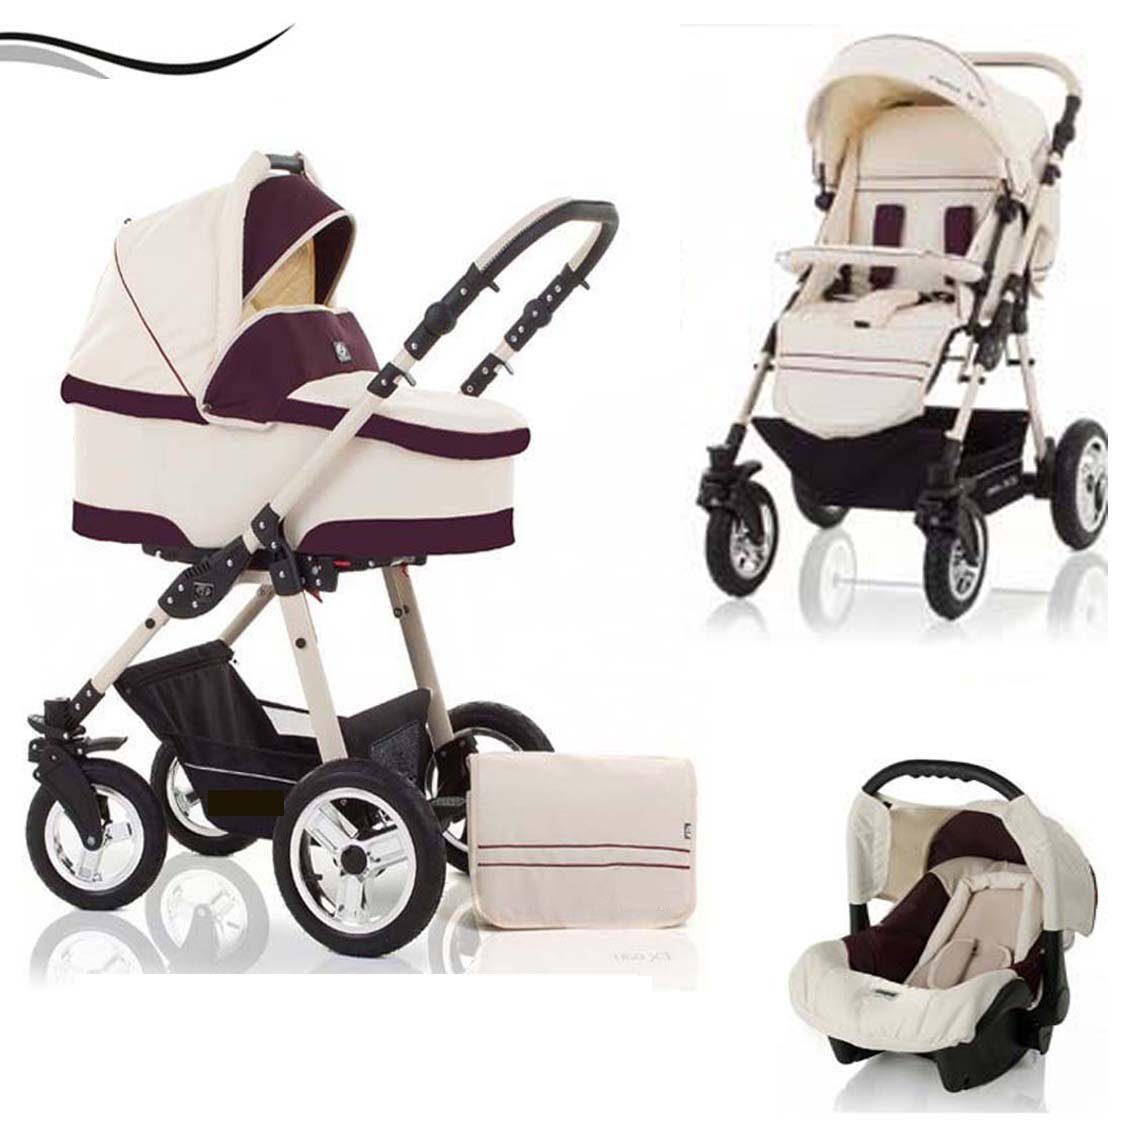 babies-on-wheels Kombi-Kinderwagen City Star 3 in 1 inkl. Autositz - 16 Teile - von Geburt bis 4 Jahre in 16 Farben Creme-Bordeaux